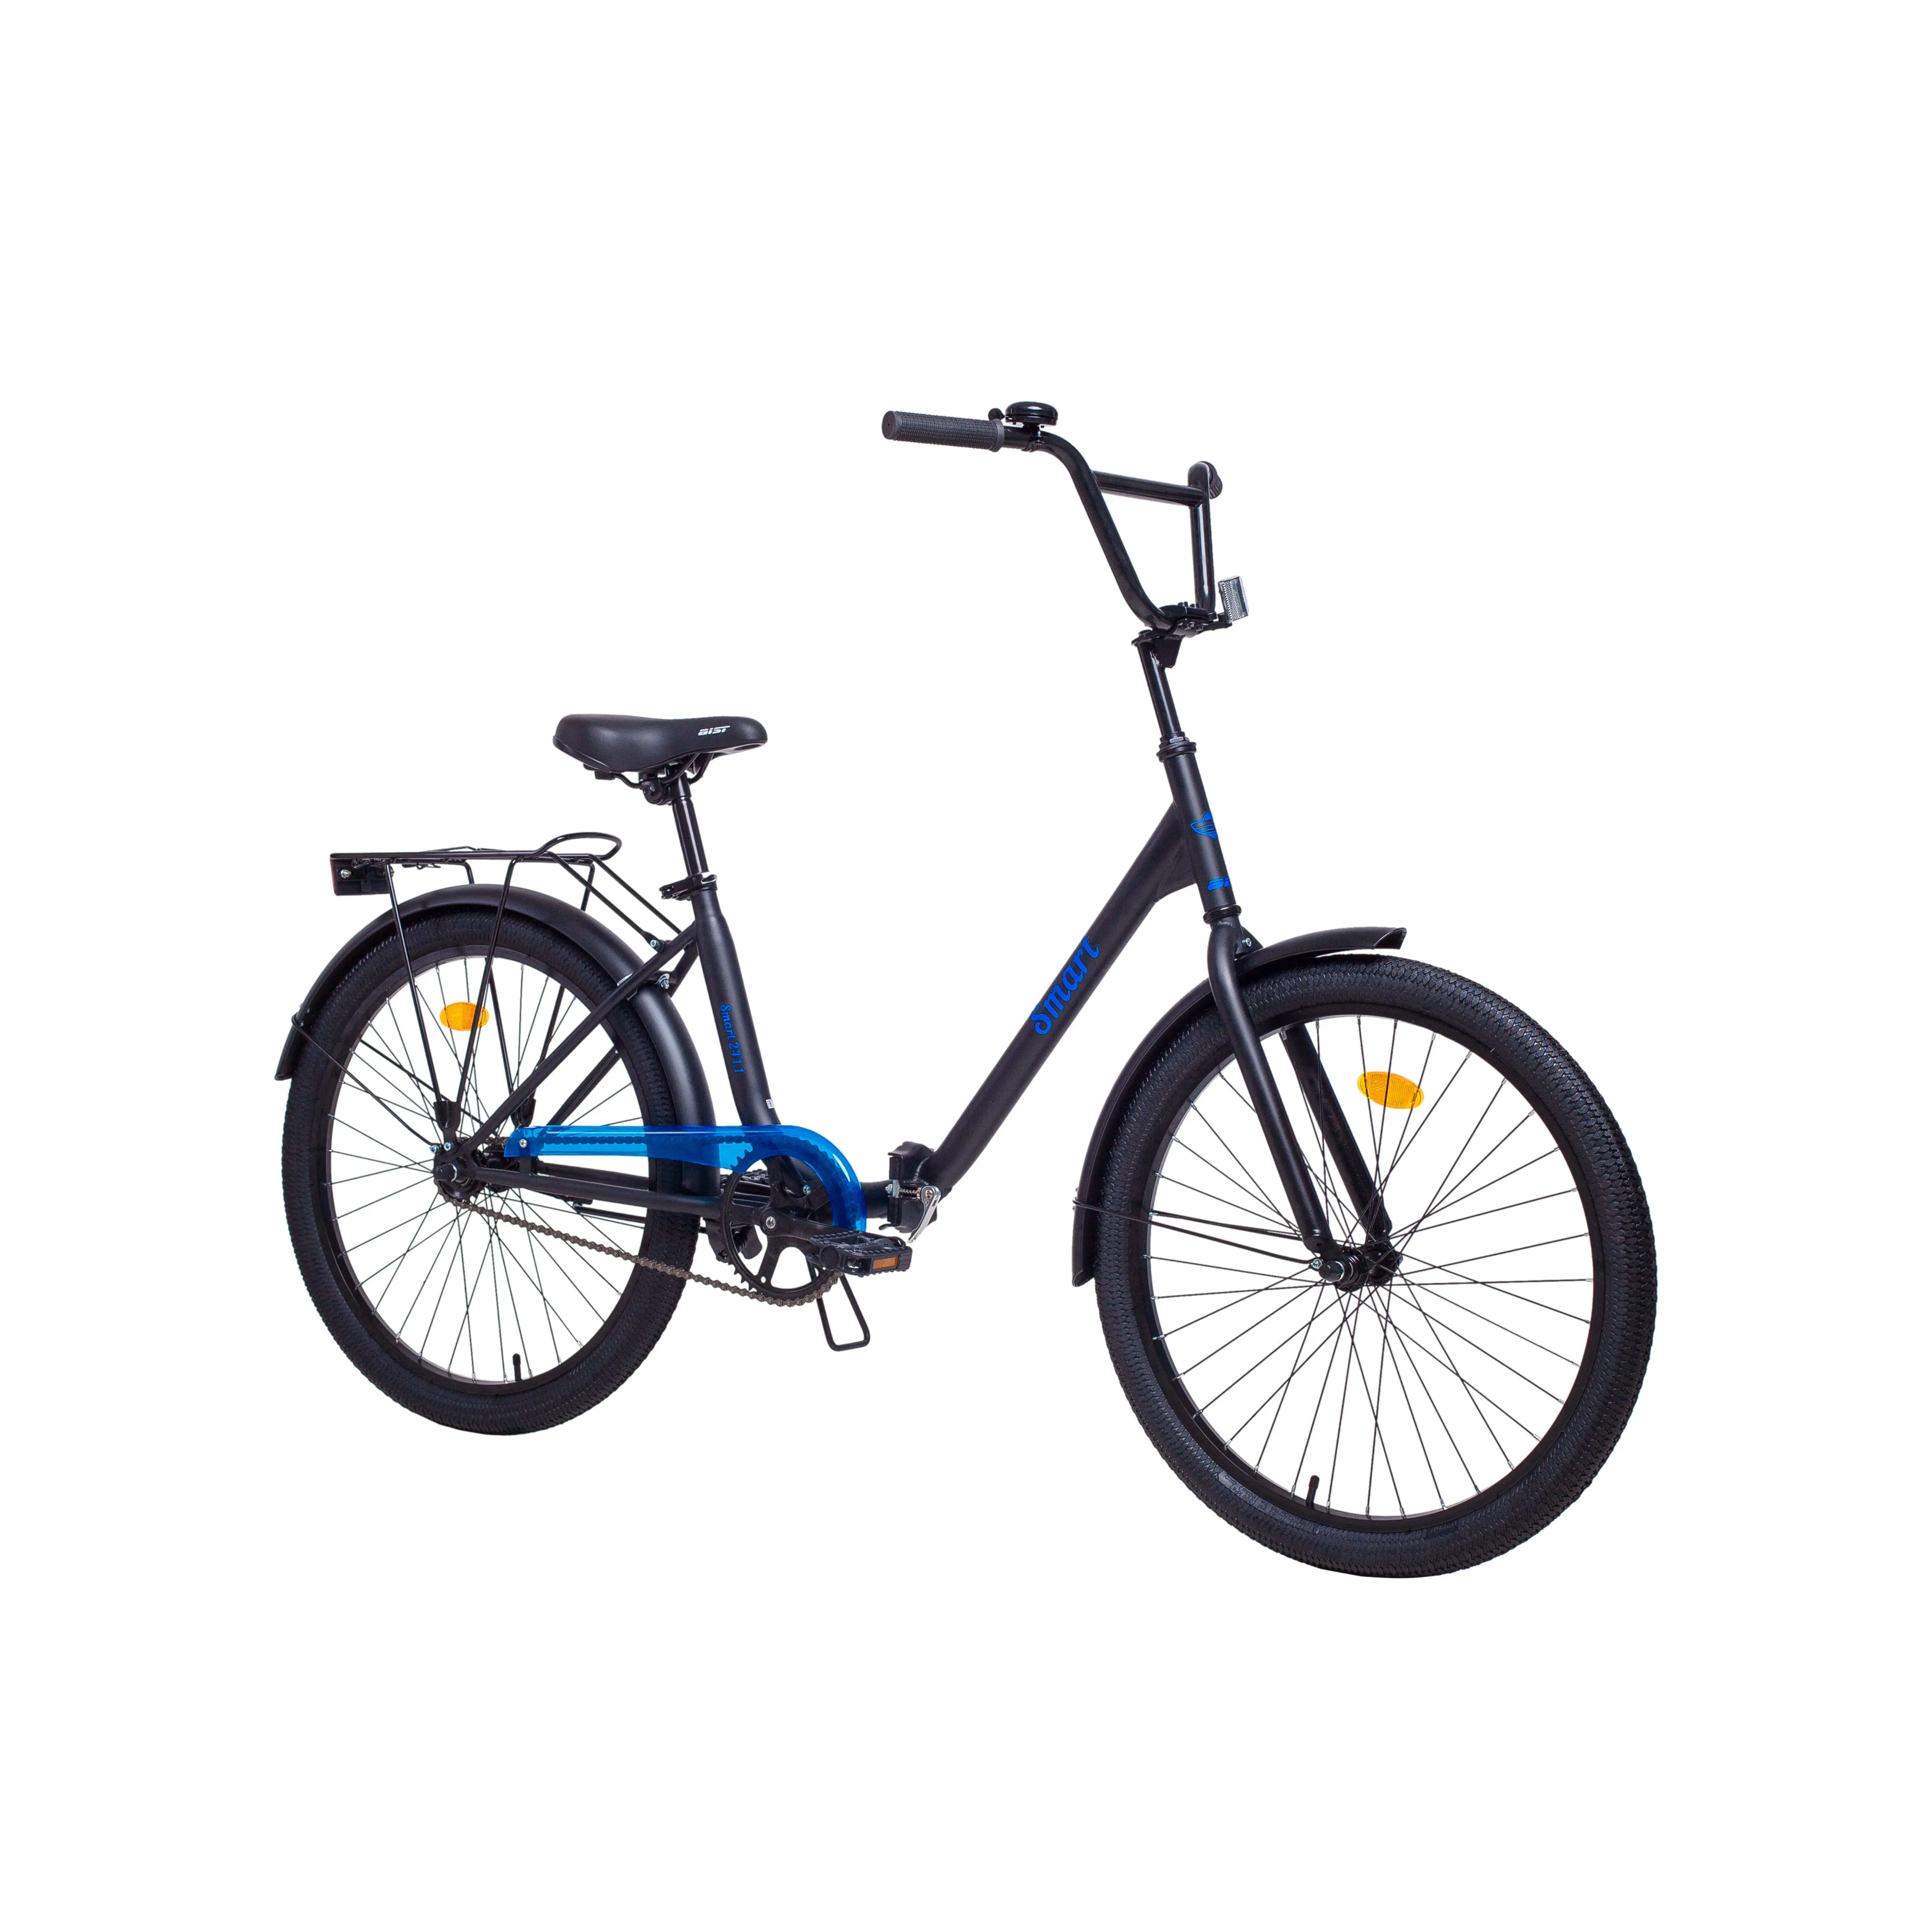 Купить велосипед в беларуси с доставкой. Аист складной велосипед Smart 24-2. Велосипед Аист смарт 20. Велосипед складной Аист 24. Aist Smart 24.1.1.